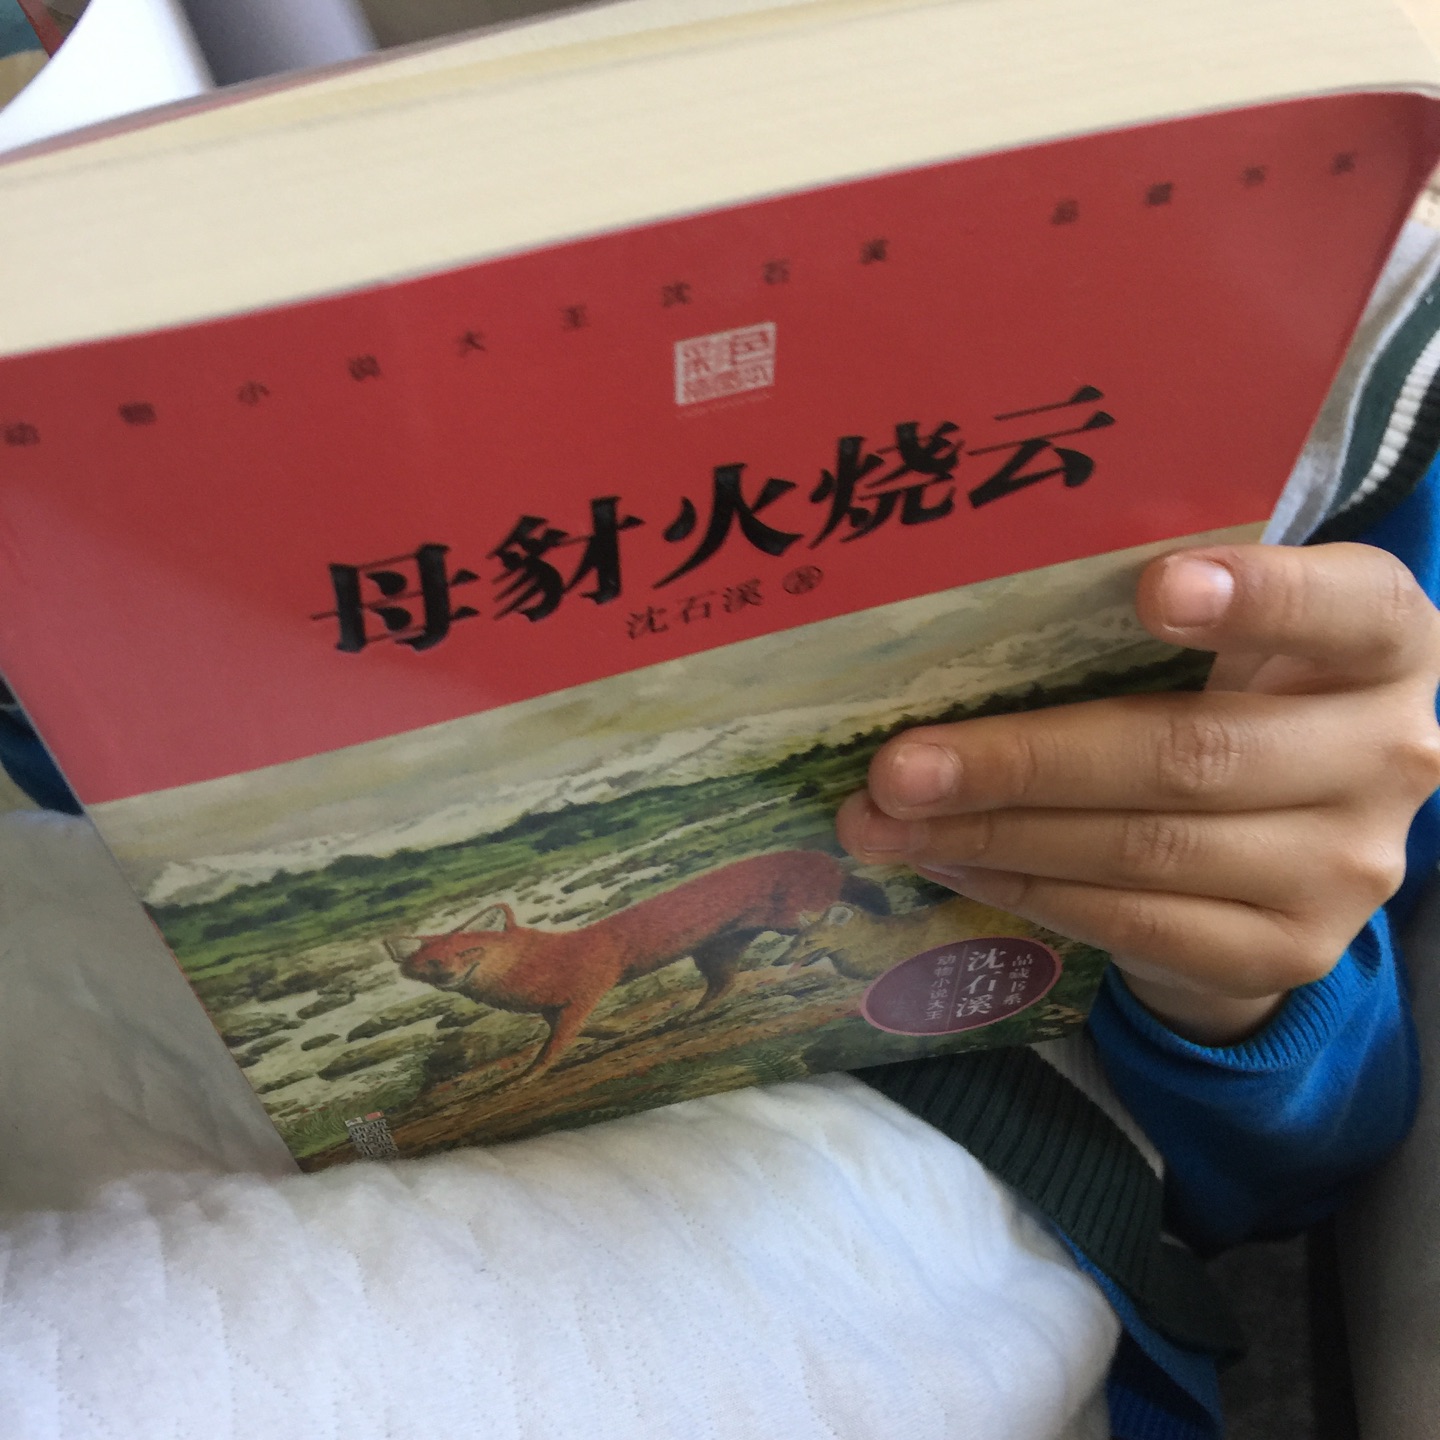 同学推荐的书籍，钟爱沈石溪的动物小说。